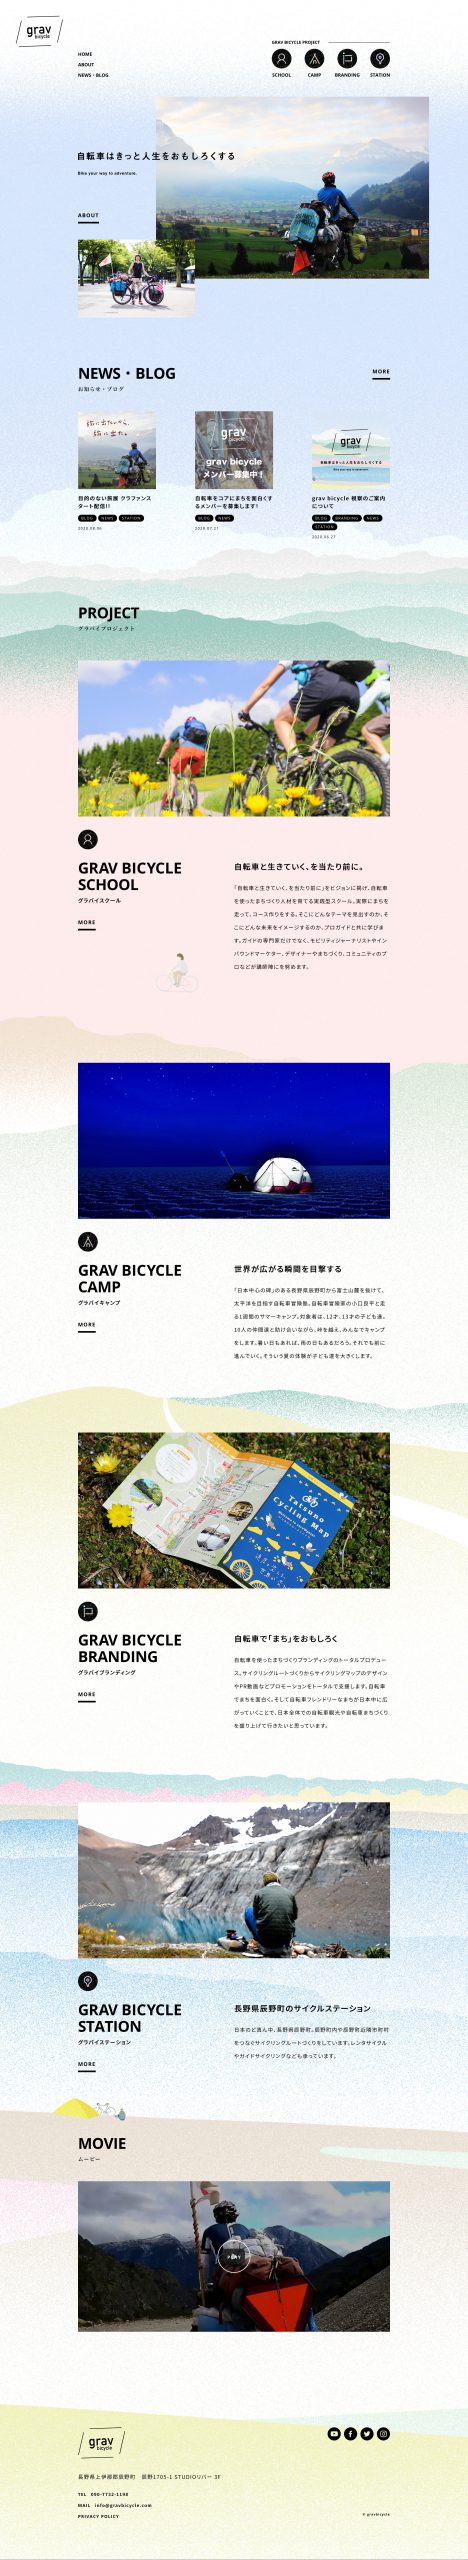 車・自転車 ホームページ制作 WEBデザイン参考ギャラリー grav bicycle